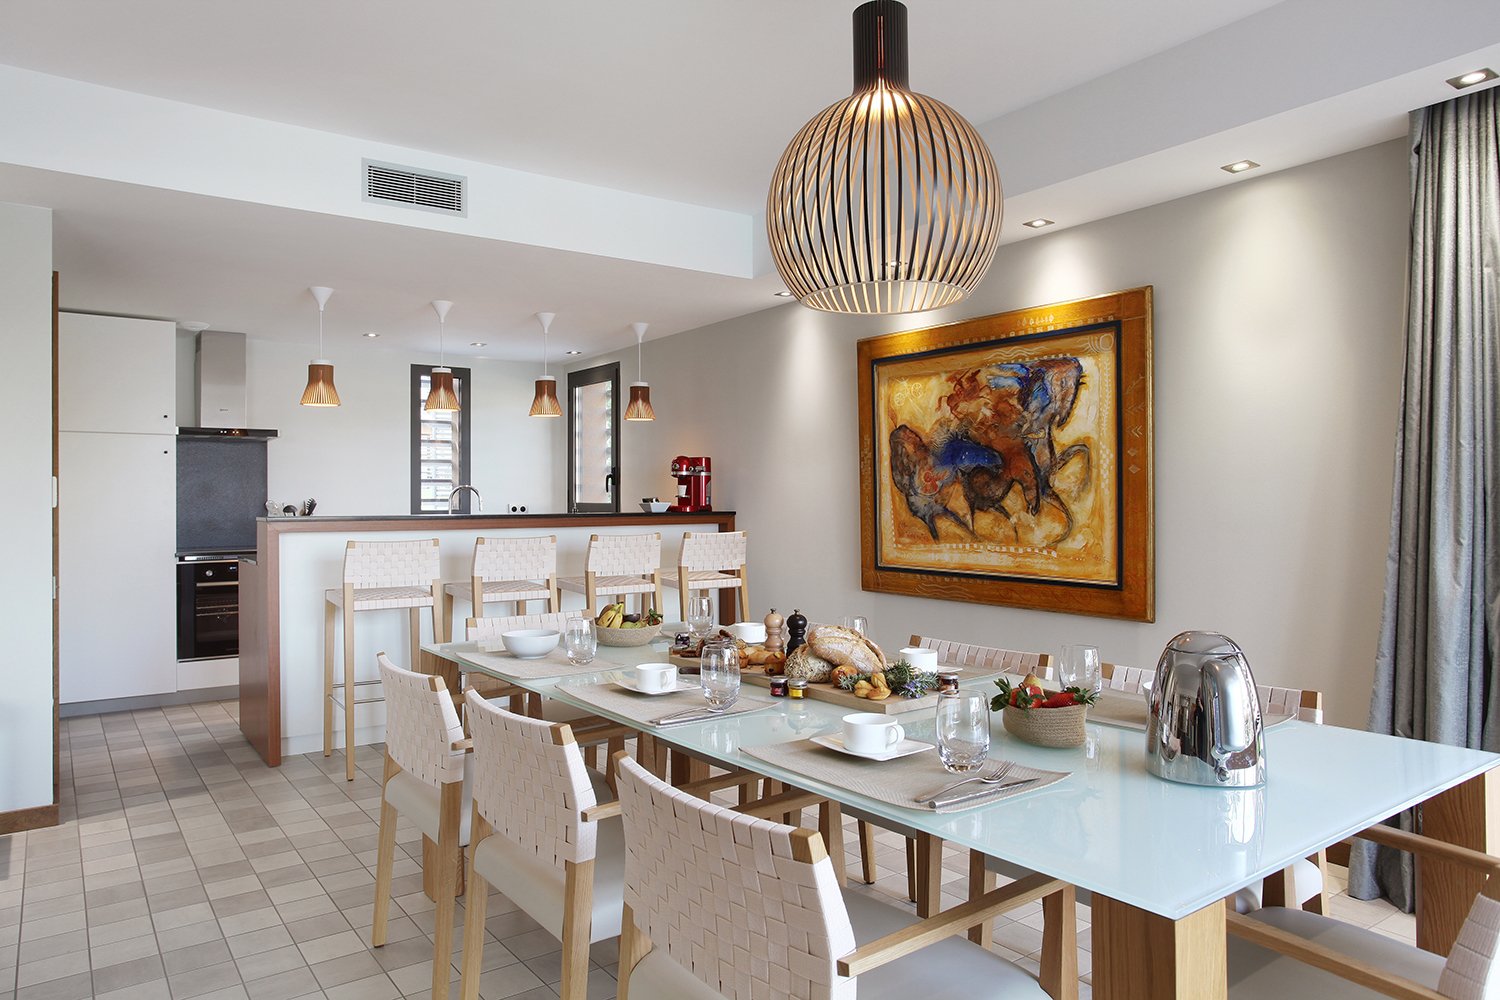 Salle à manger Villa WOOD - Kube Hotel Saint-Tropez - Côte d'Azur